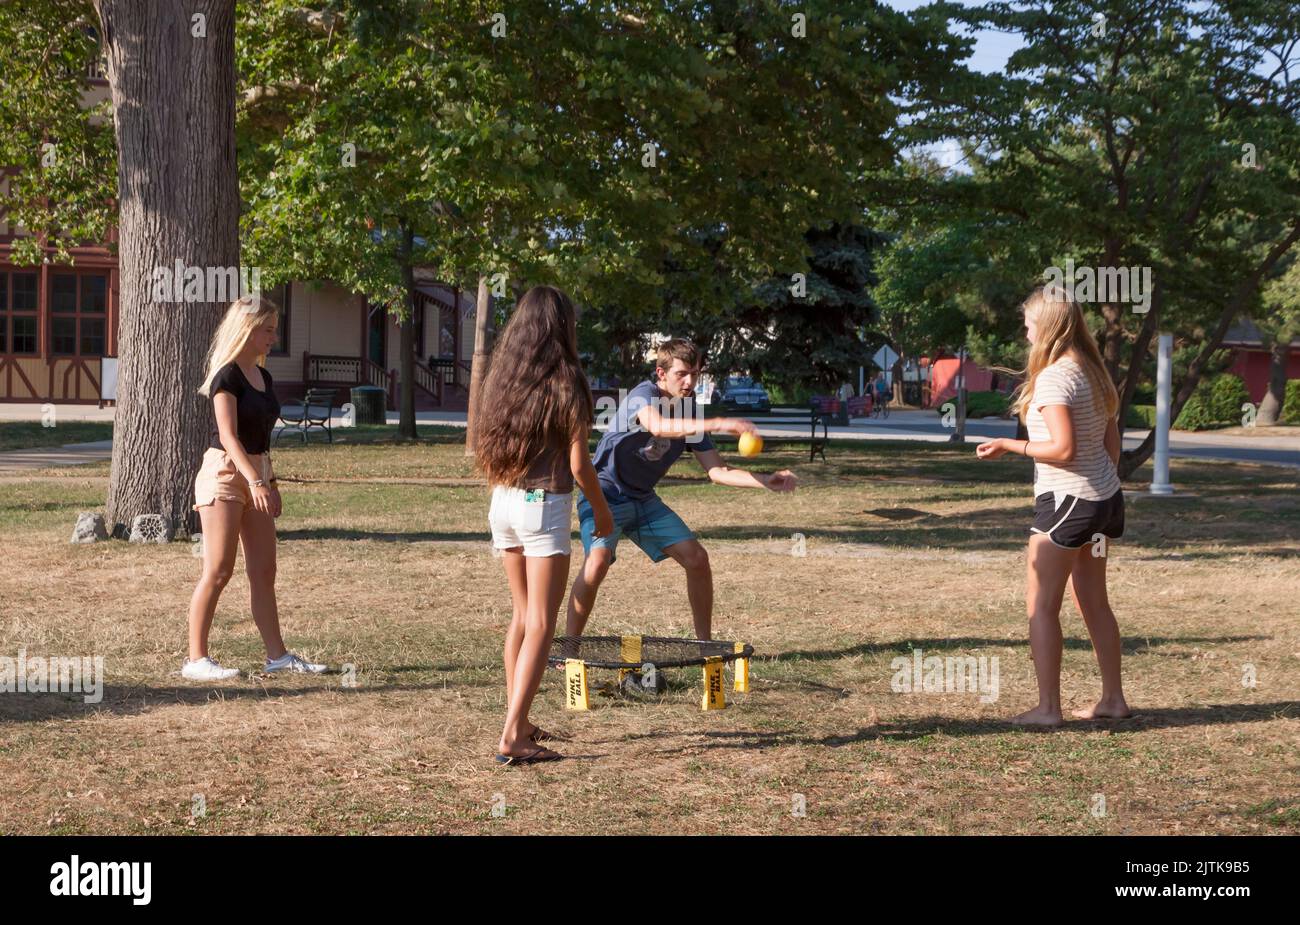 Quatre jeunes adultes mixtes jouent au jeu de sport Roundnet de Spikeball Outdoors. Banque D'Images